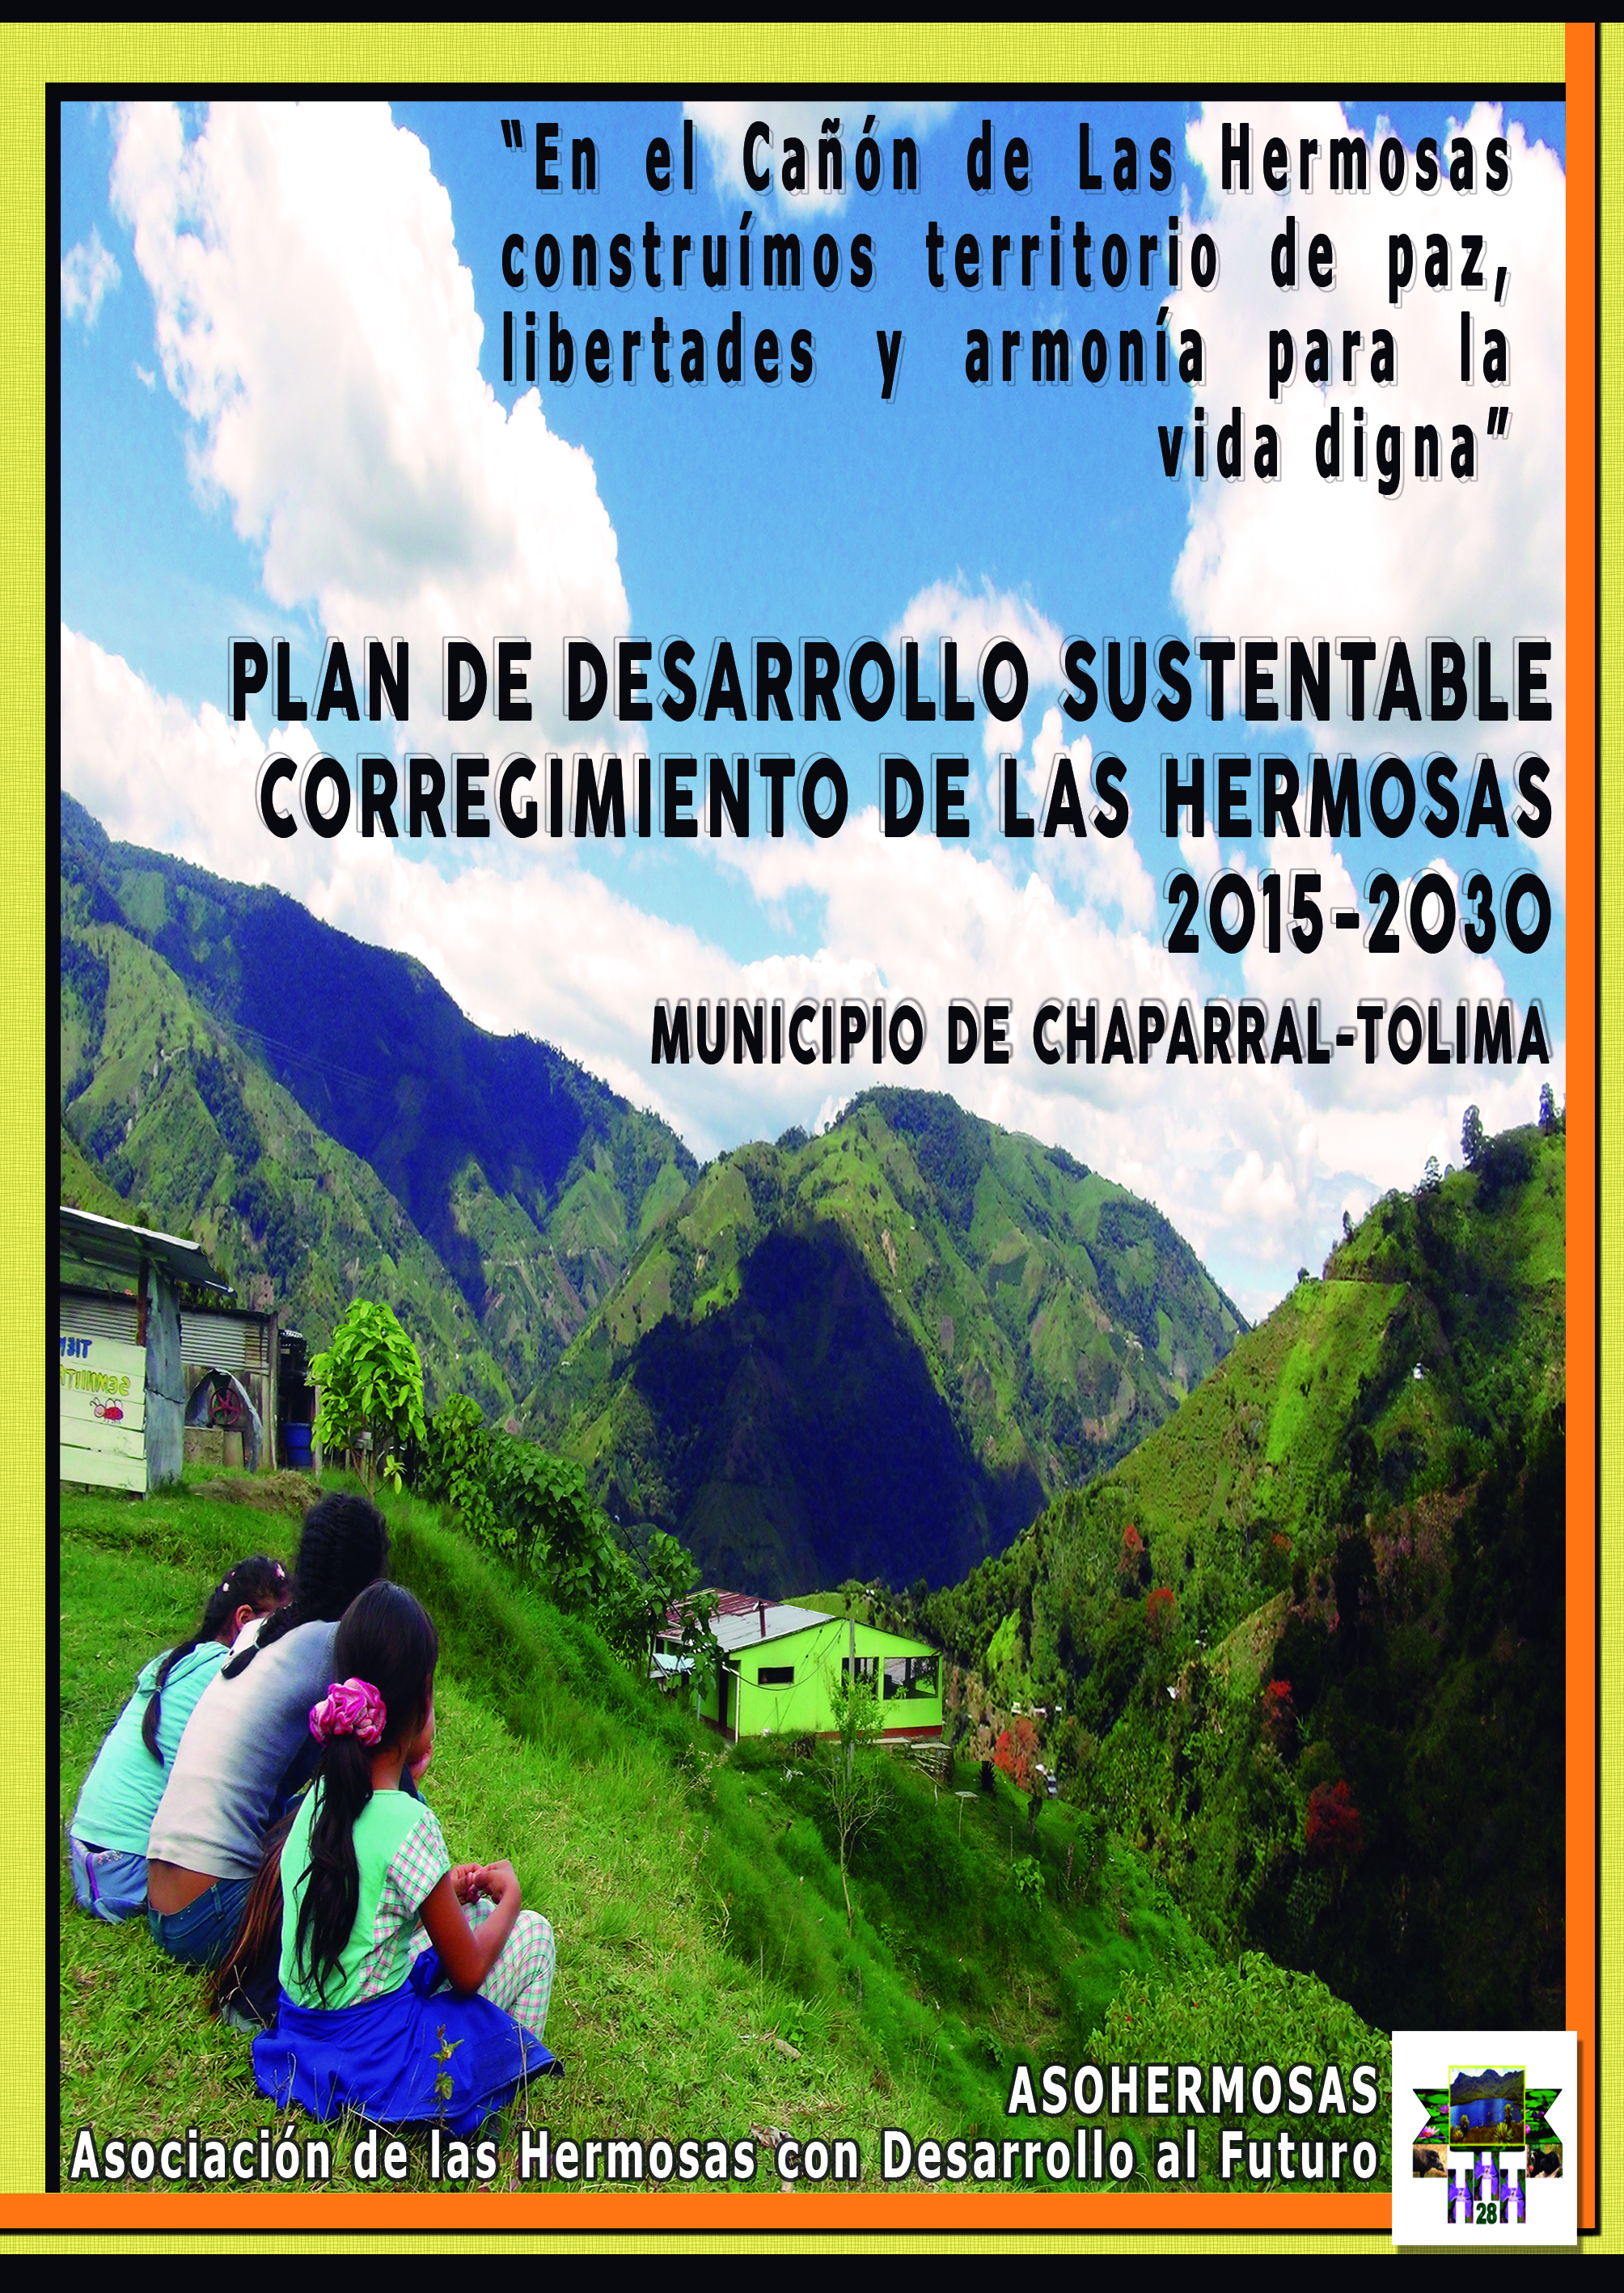 Gráfica alusiva a Cartilla del Plan de Desarrollo Sustentable de Las Hermosas (Municipio de Chaparral-Tolima)